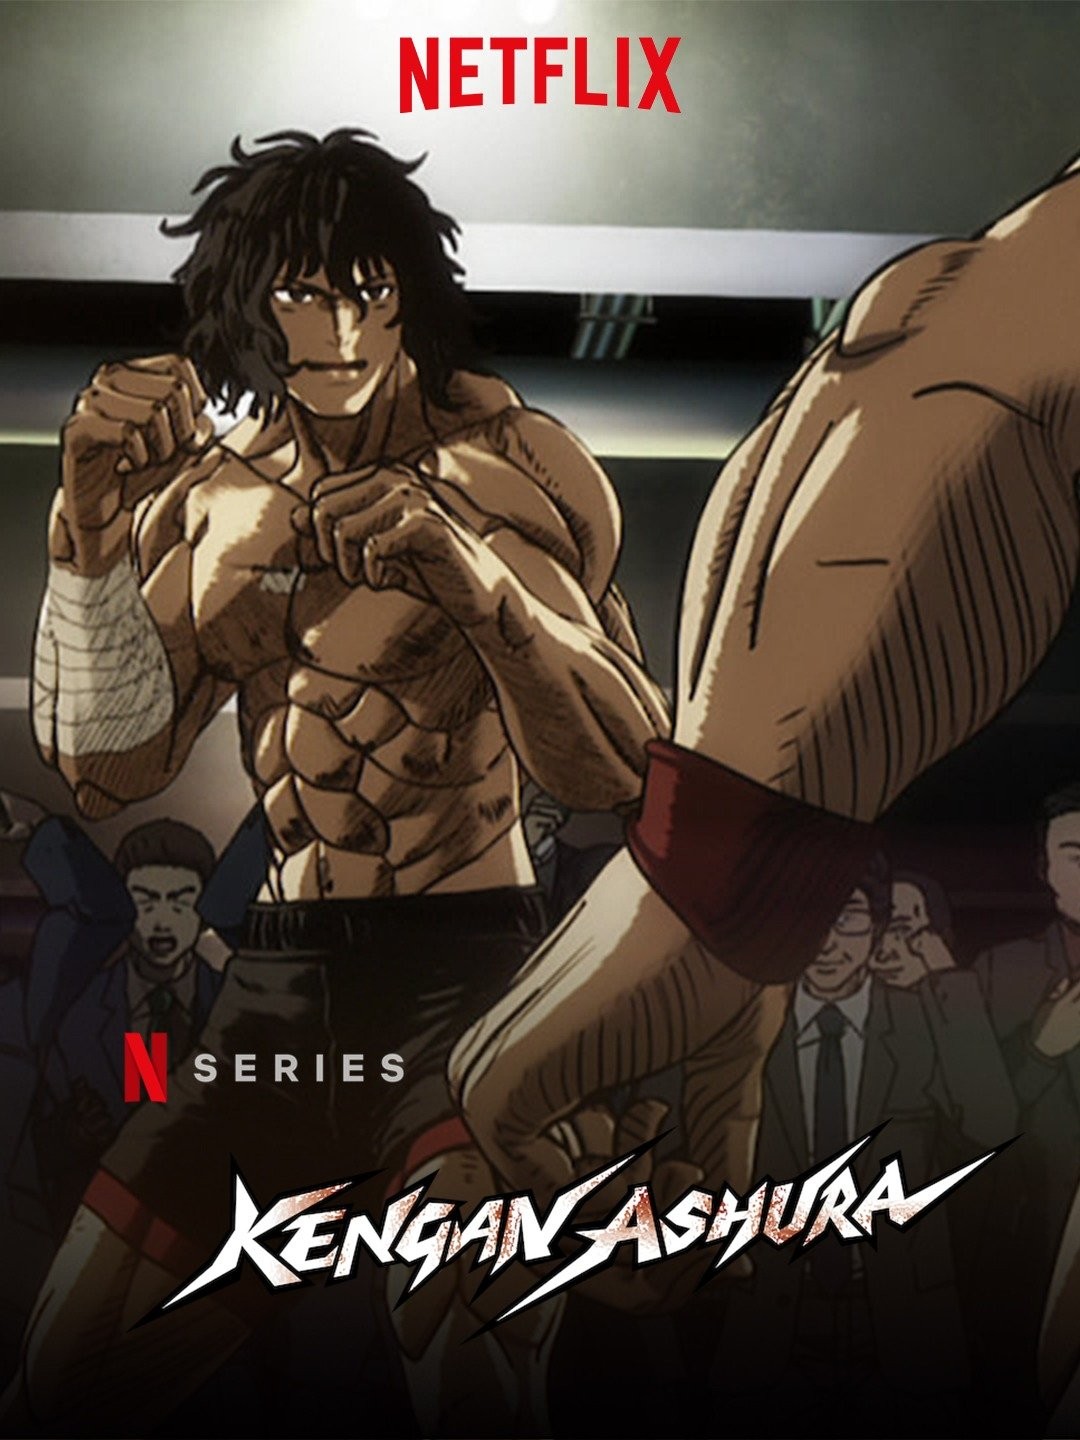 Kengan Ashura Anime Serie Season 2 Episodes 1-12 Dual Audio  English/Japanese | eBay